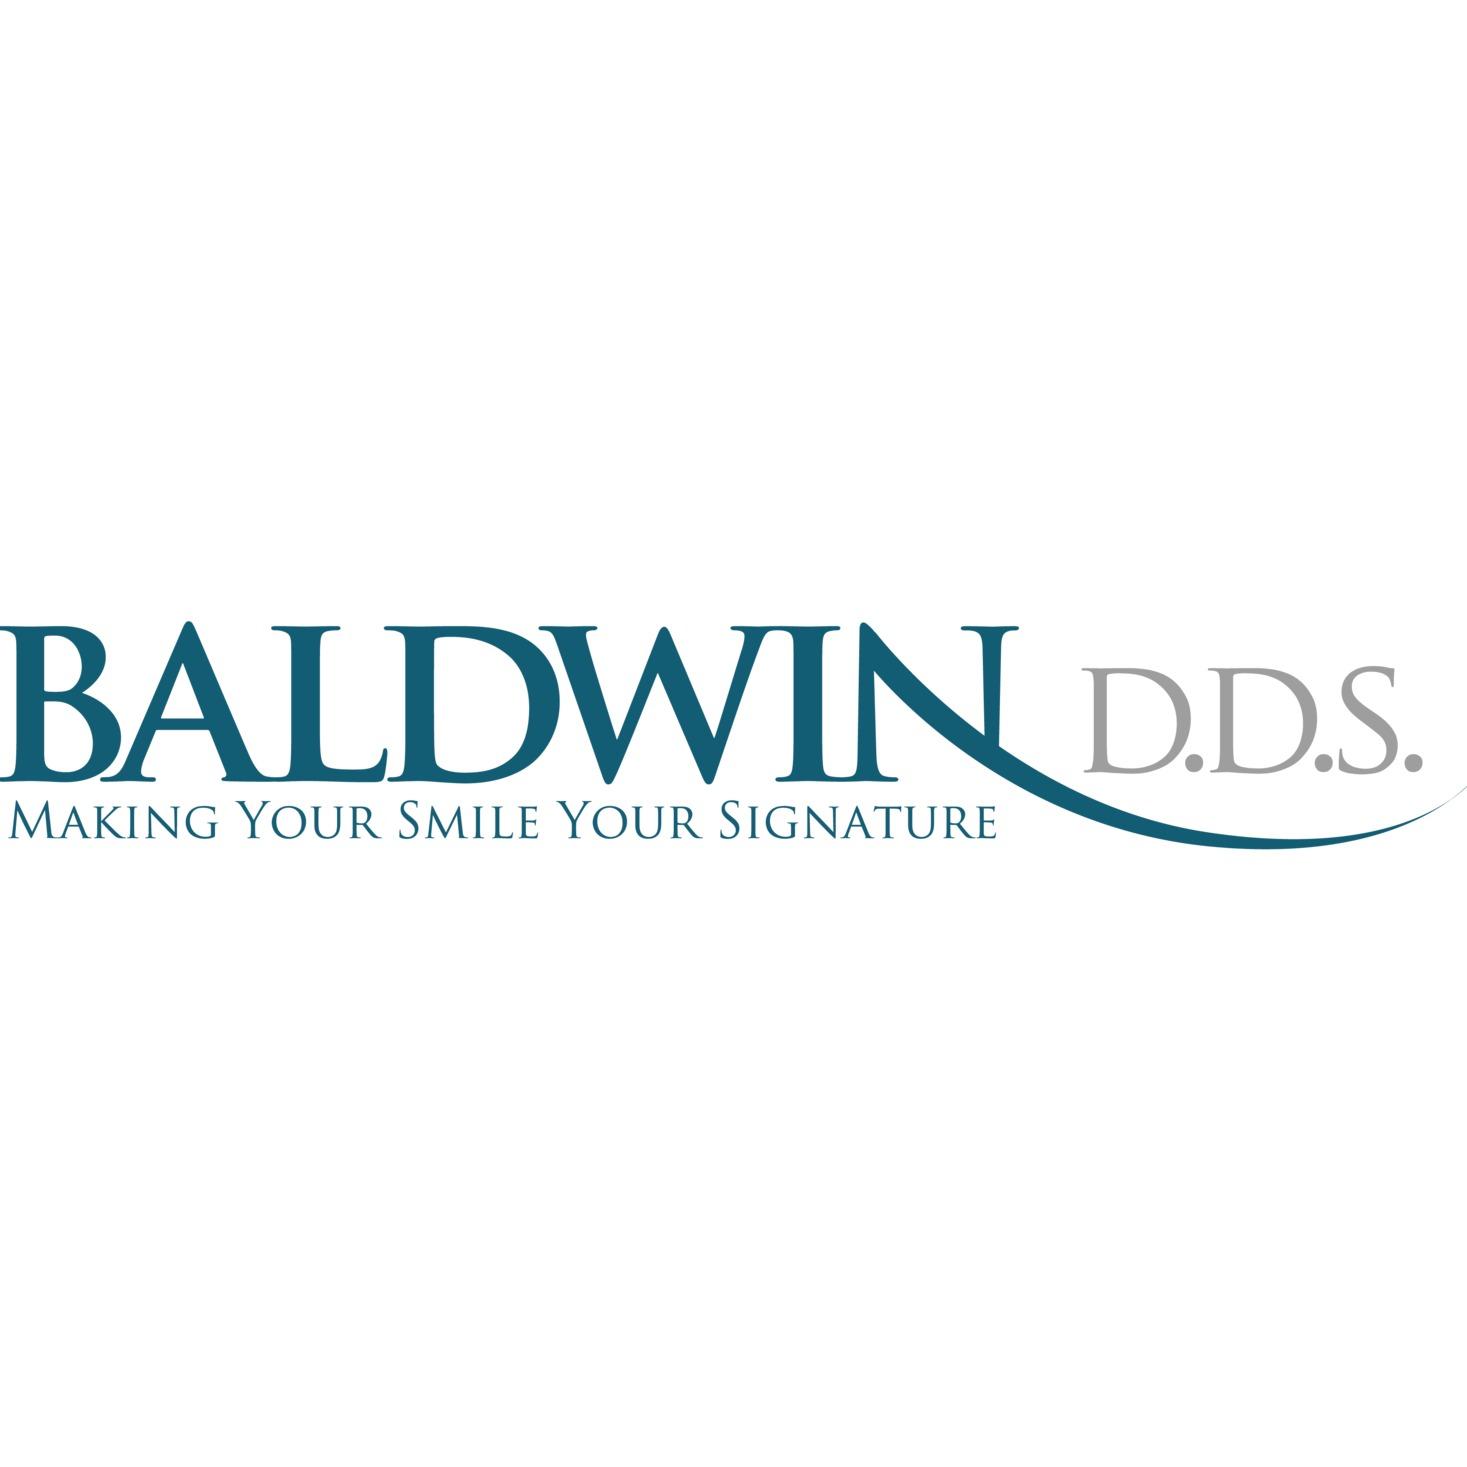 Jason Baldwin DDS - Dental Artistry - Truckee, CA 96161 - (530)587-9560 | ShowMeLocal.com